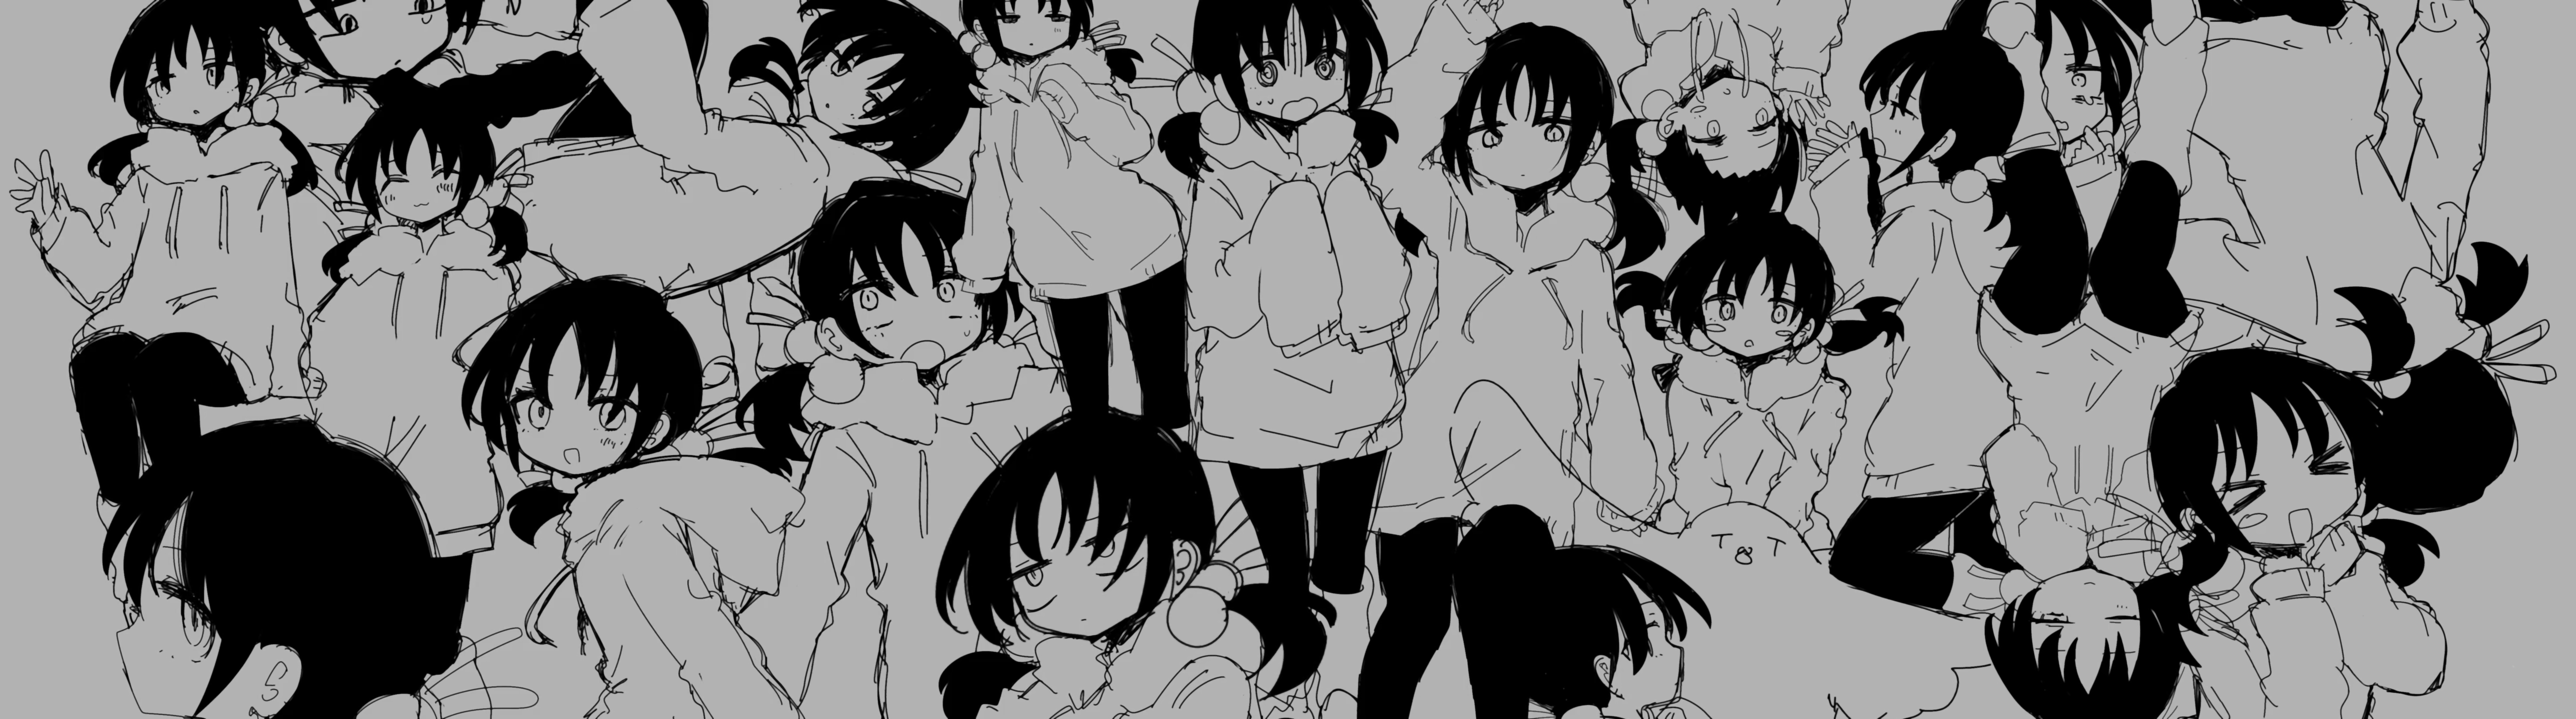 Kaai Yuki Inabakumori Nukunuku Nigirimeshi Vocaloid Utau Anime Girls Monochrome 7724x2156